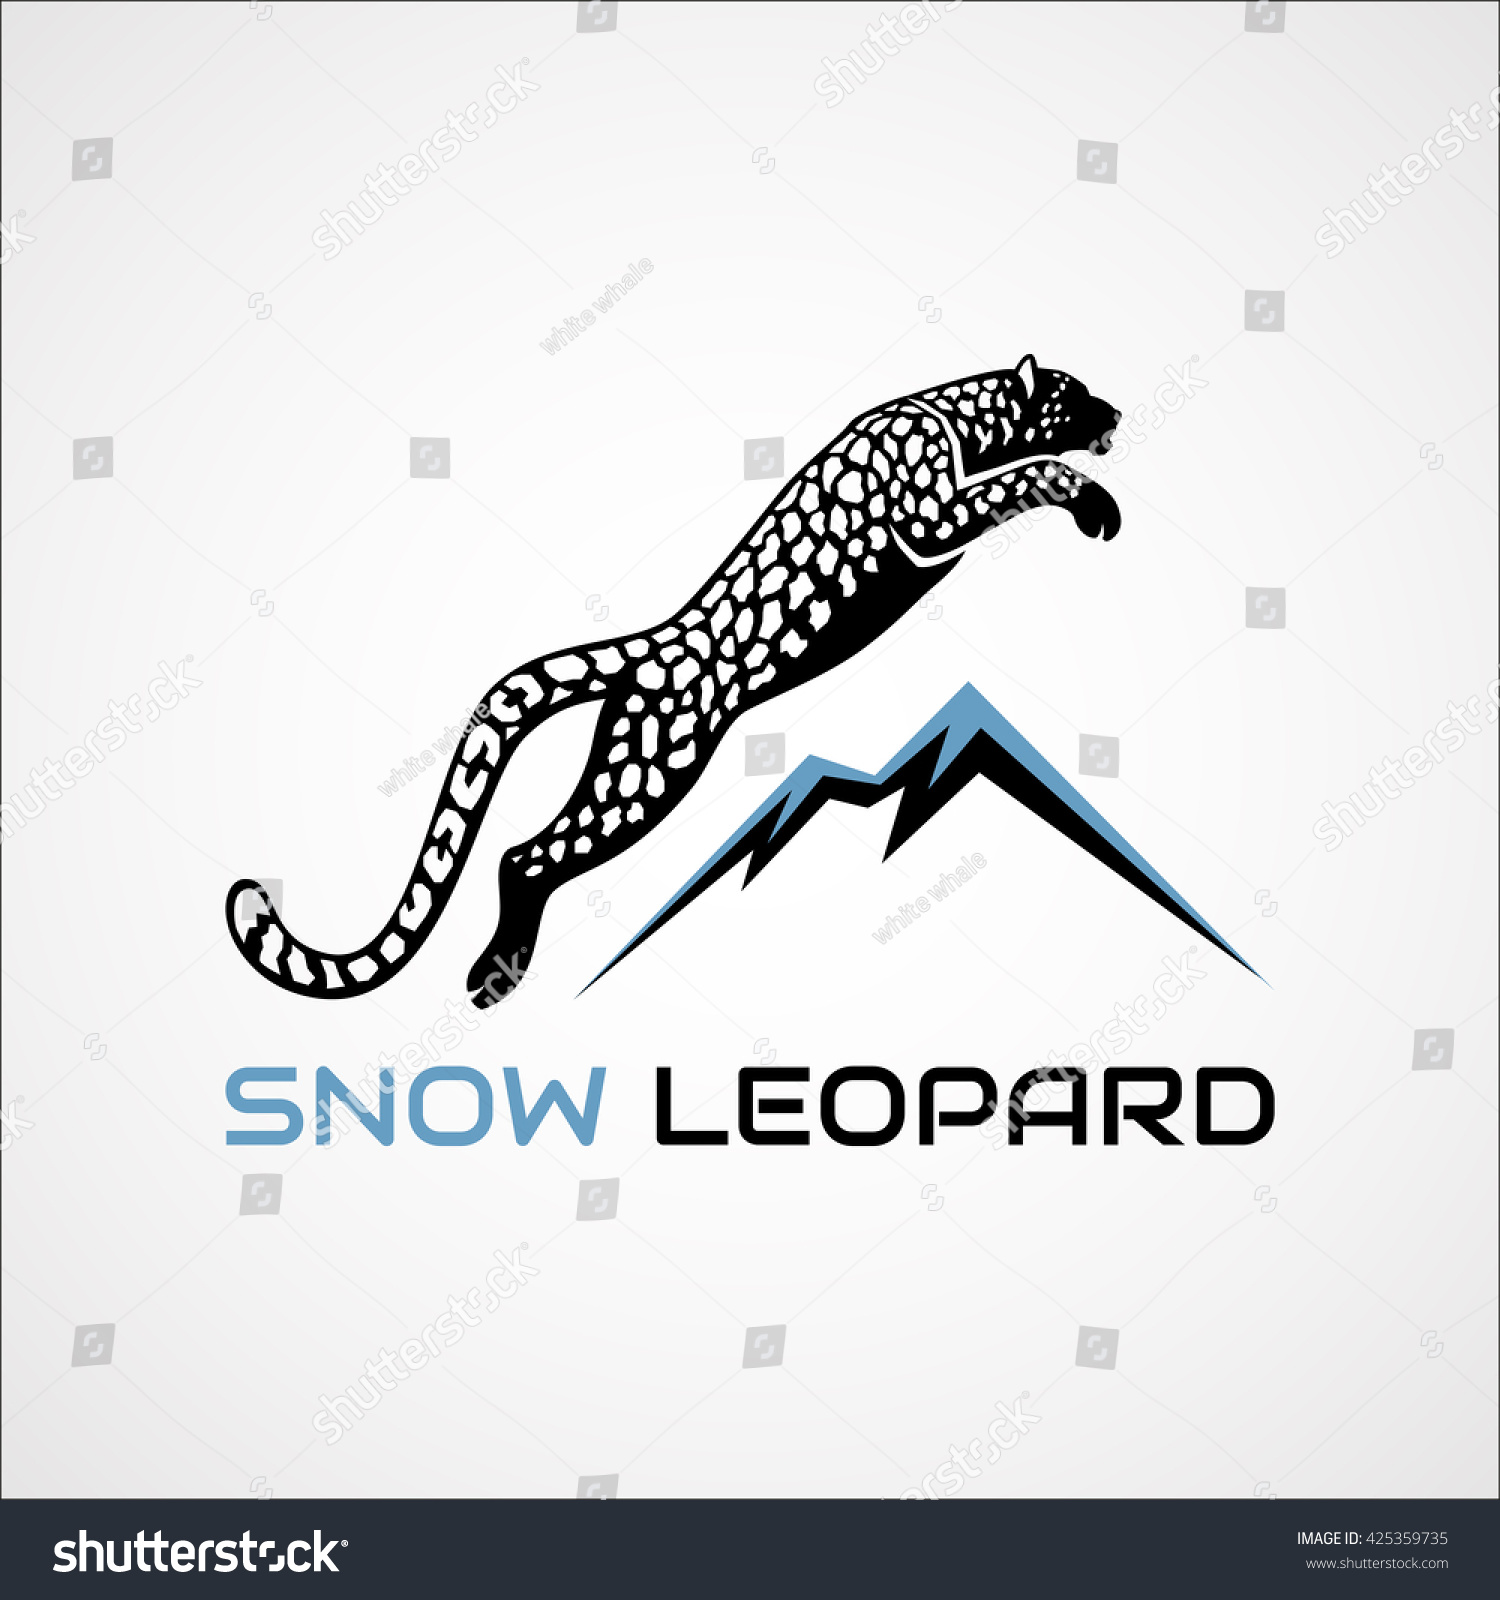 Снежный Барс в прыжке логотип